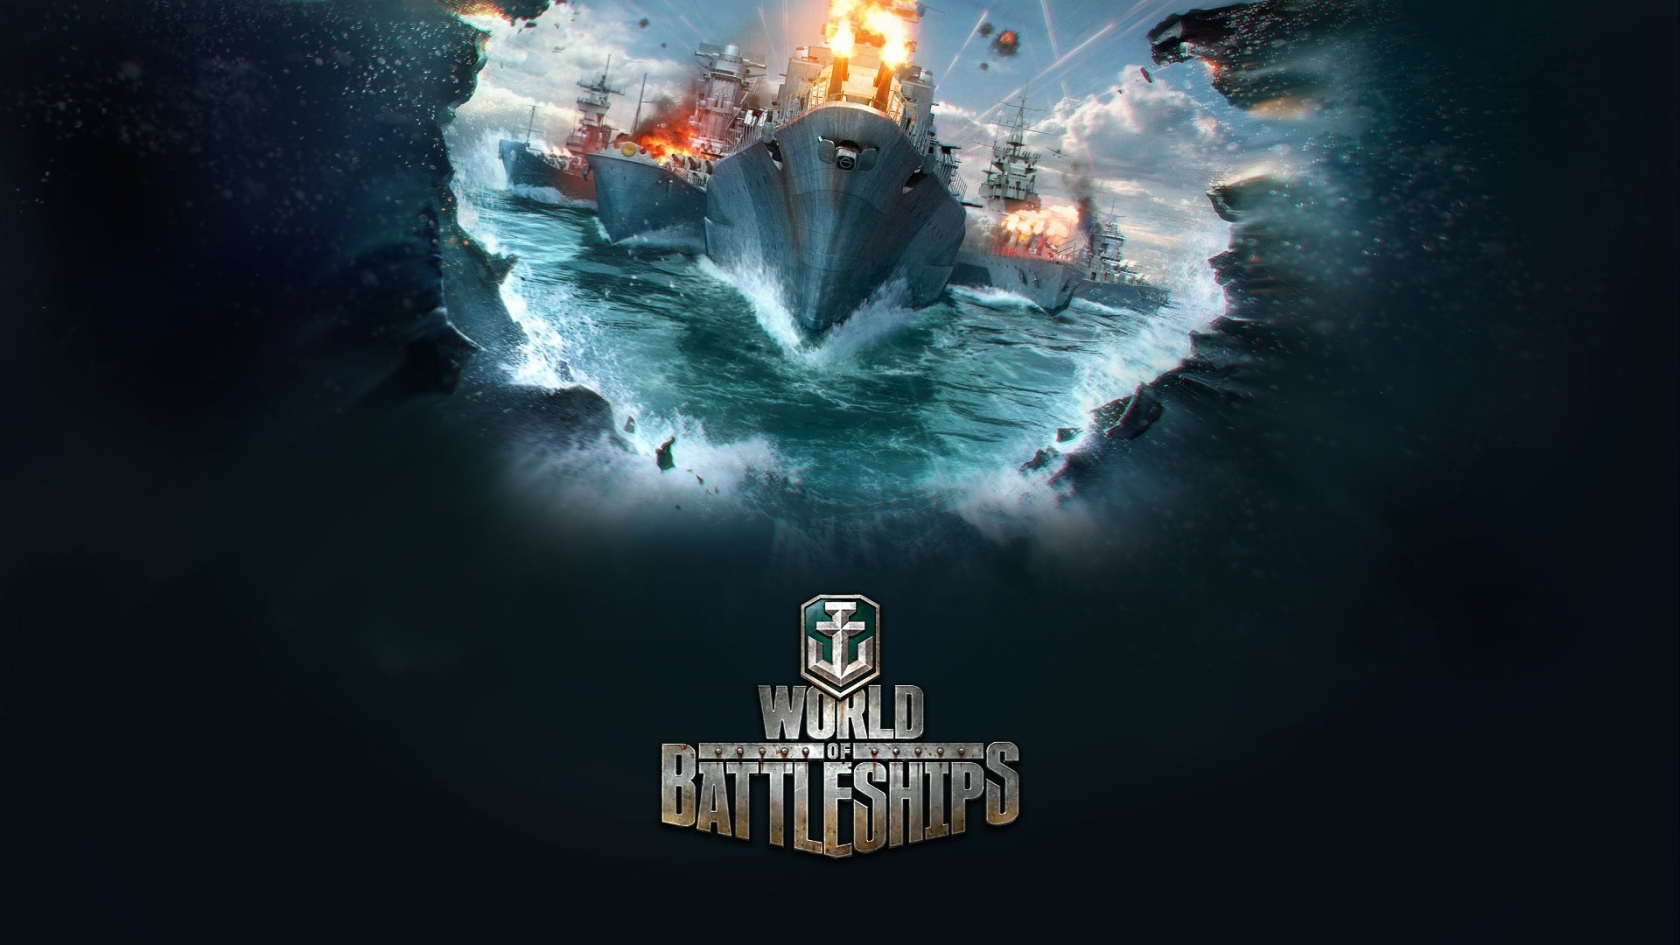 World of Battleships for 1680 x 945 HDTV resolution